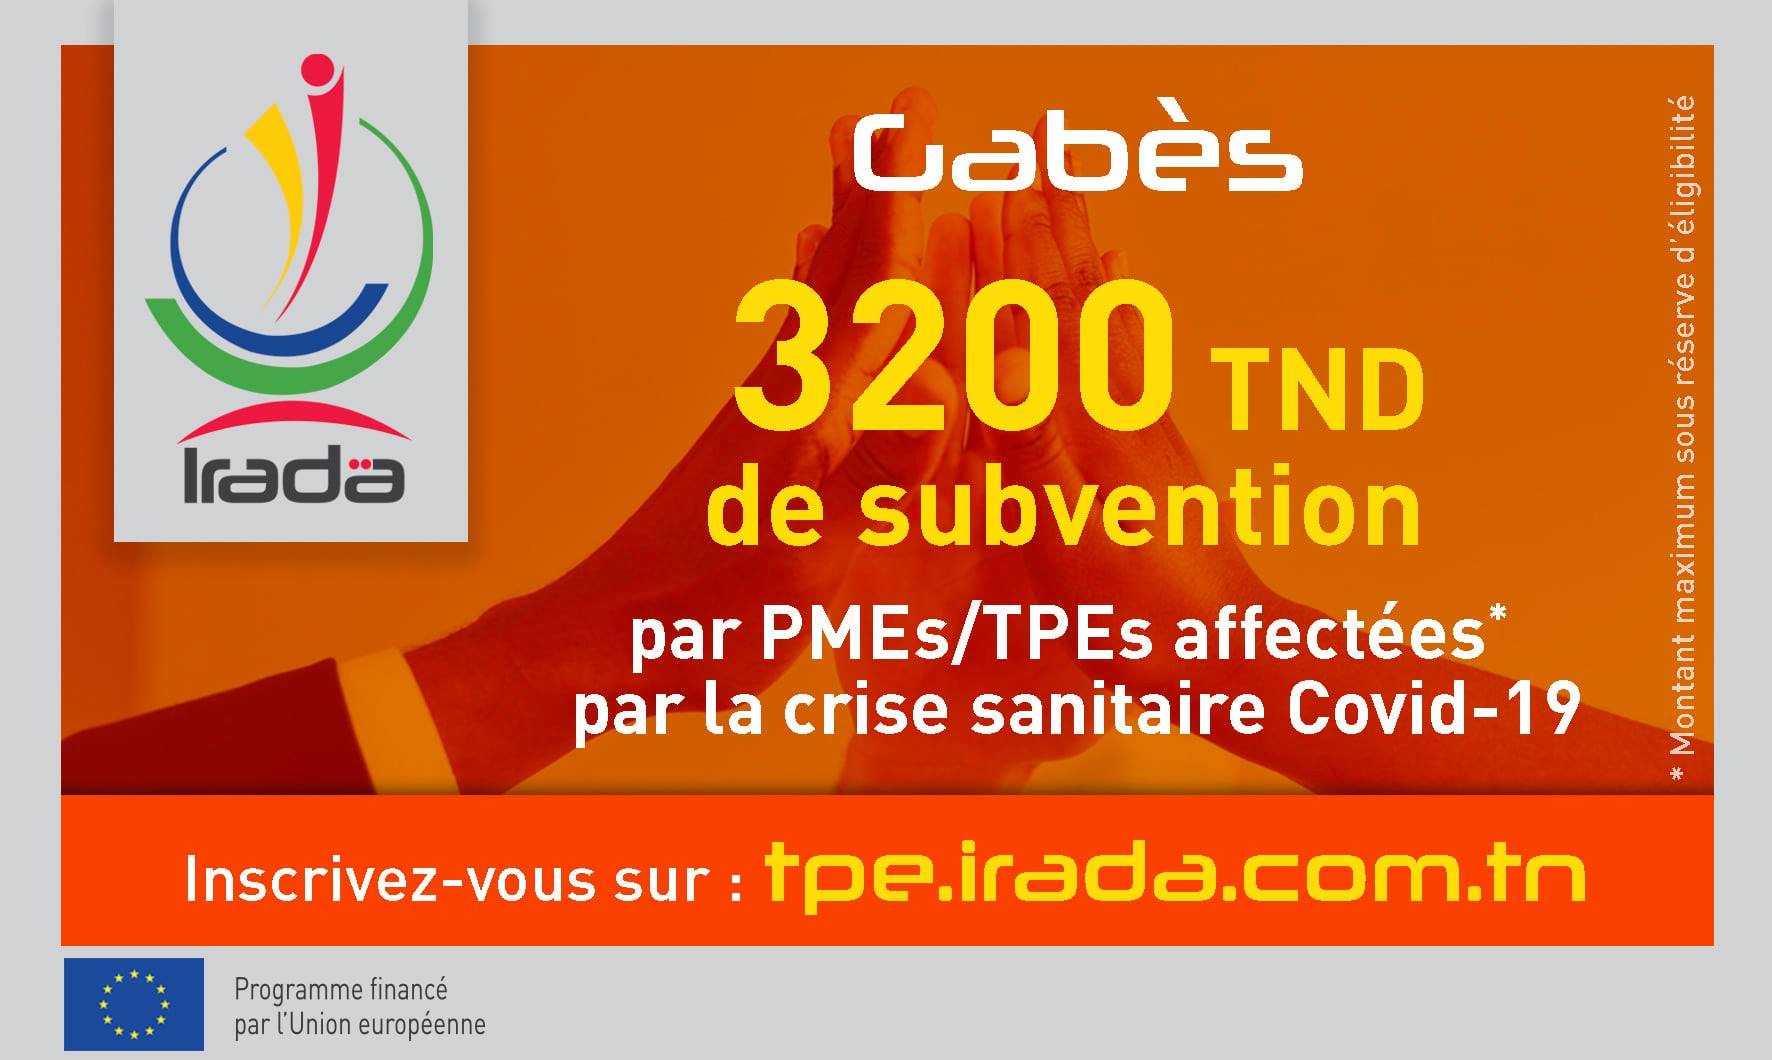 Avis aux PMEs/TPEs de la région de Gabès - Covid19 : Octroi de soutien financier